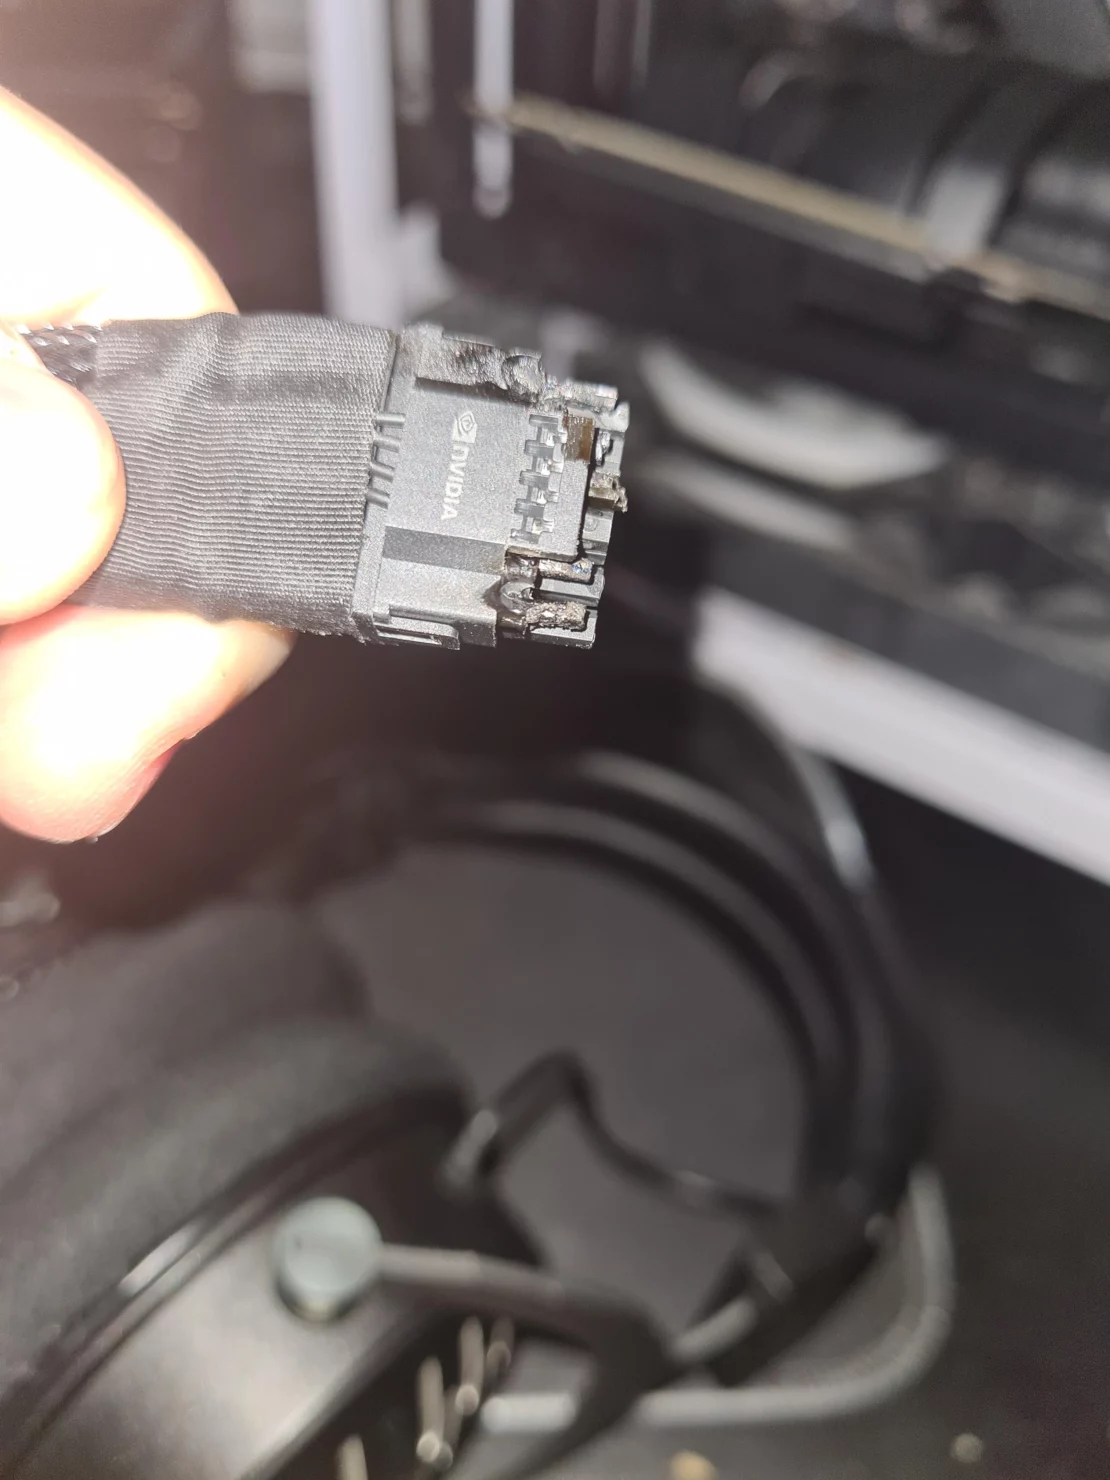  พบสายไฟเลี้ยง 16 พินของการ์ดจอ Nvidia GeForce RTX 4090 ไหม้ คาดเกิดจากการดัดโค้งงอมากเกินไป 